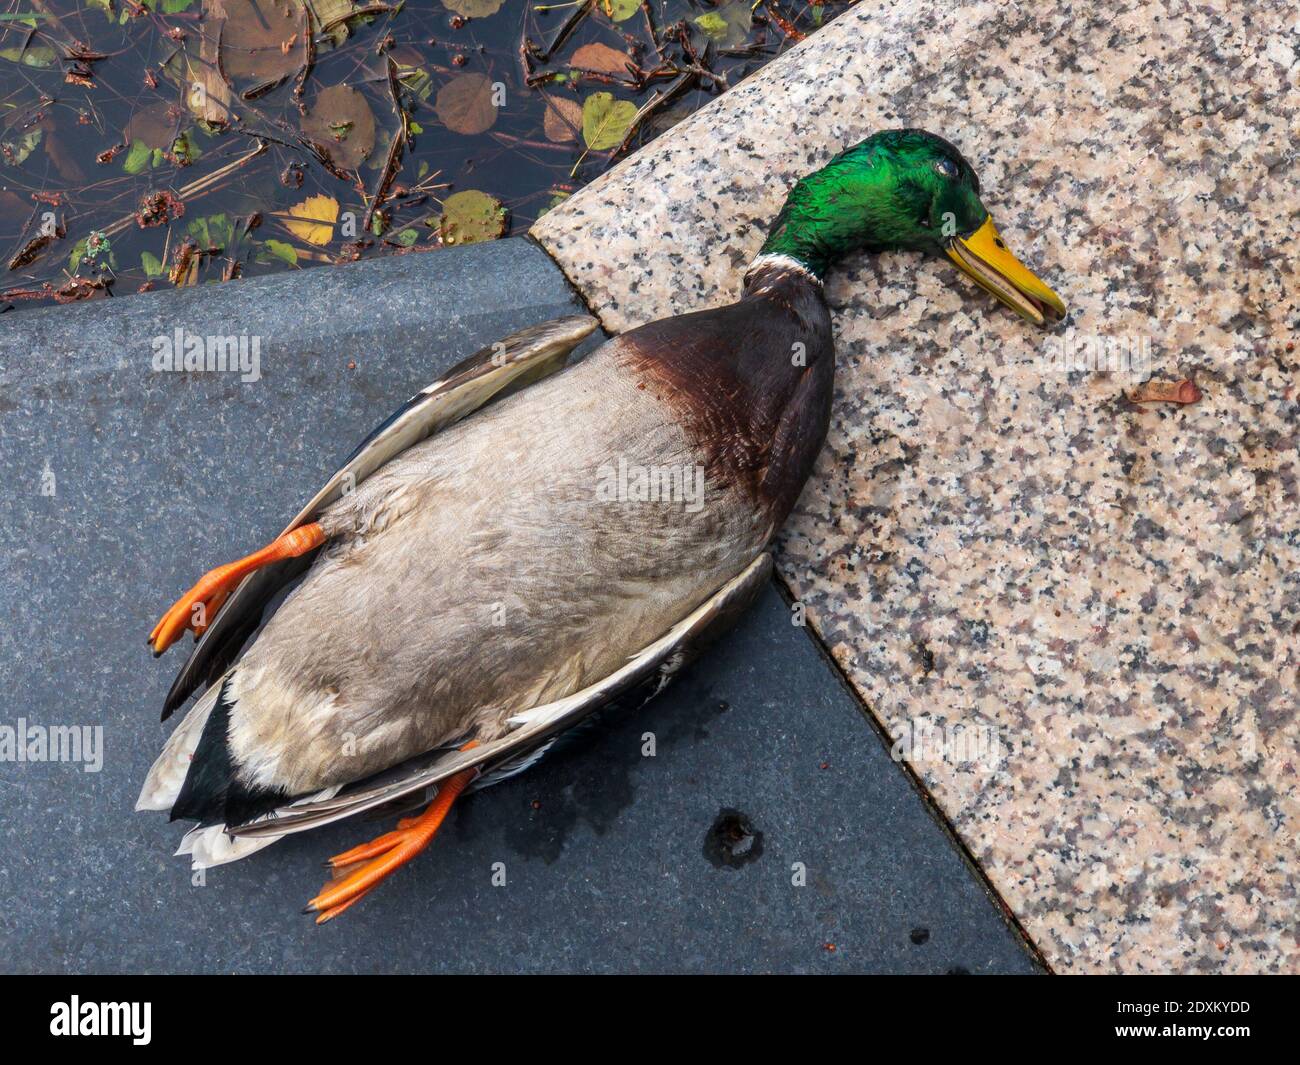 dead-duck-on-marble-border-2DXKYDD.jpg